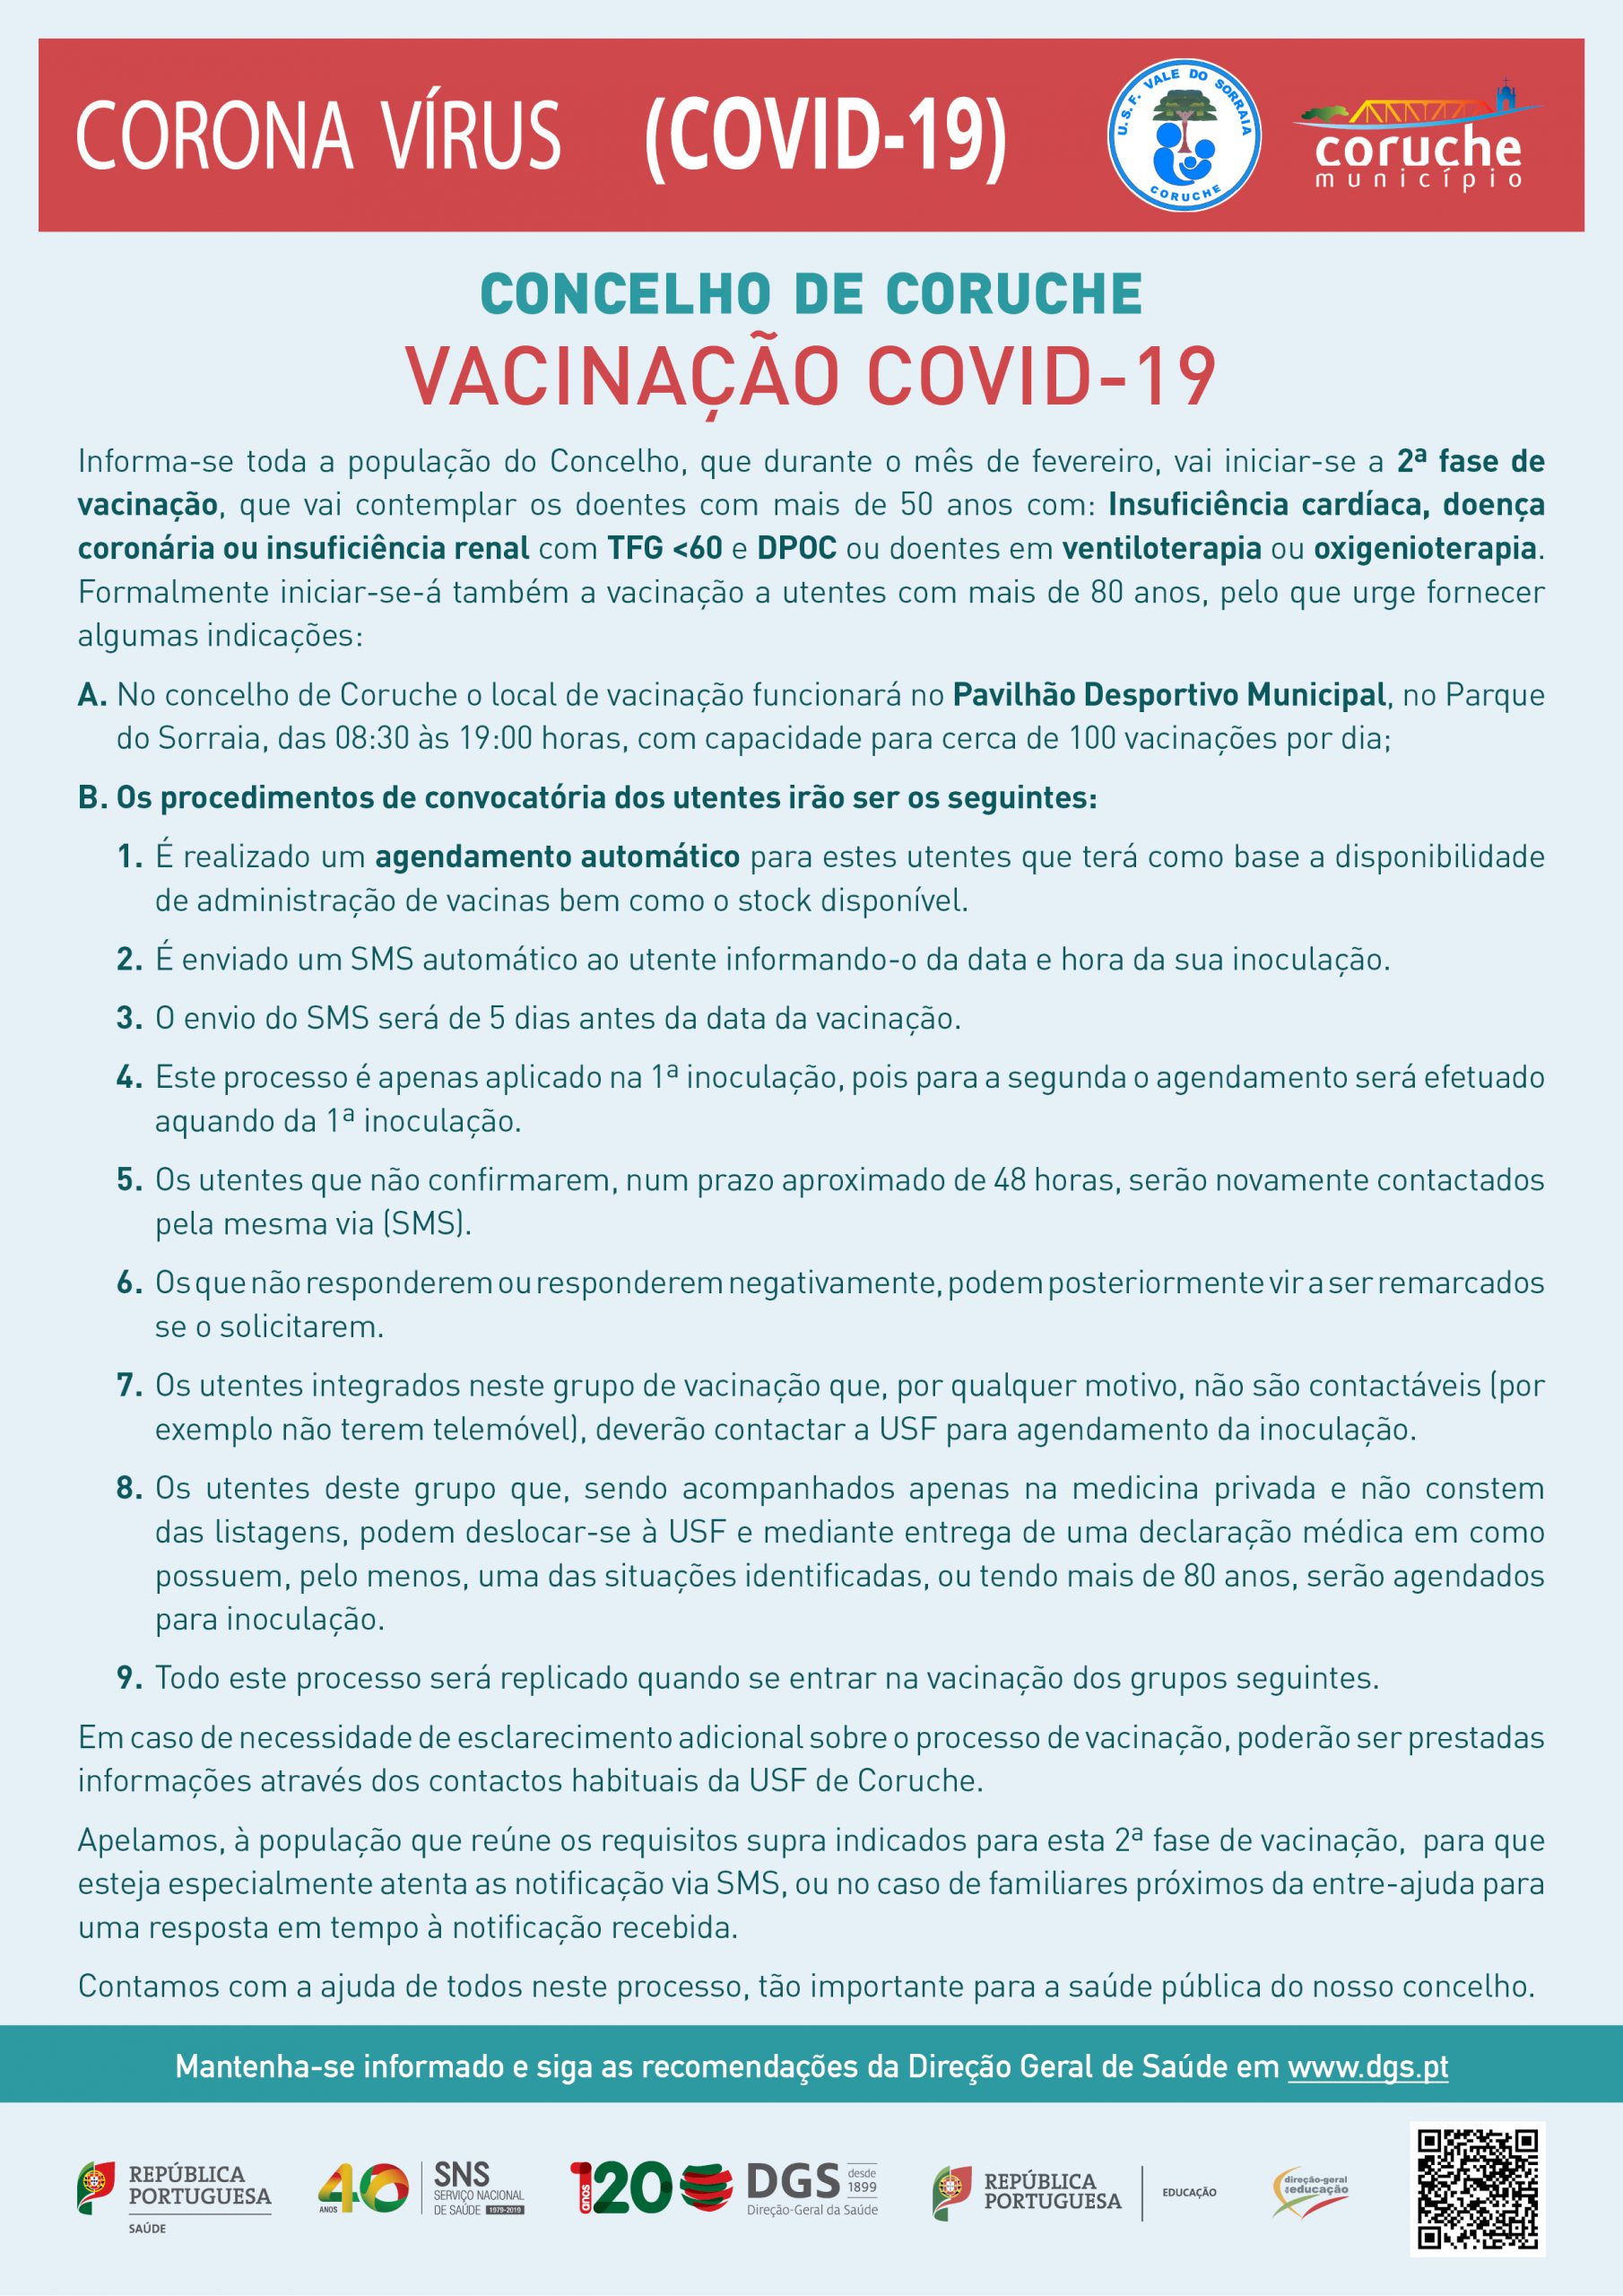 Início da 2.ª fase da vacinação COVID – 19 no Concelho de Coruche